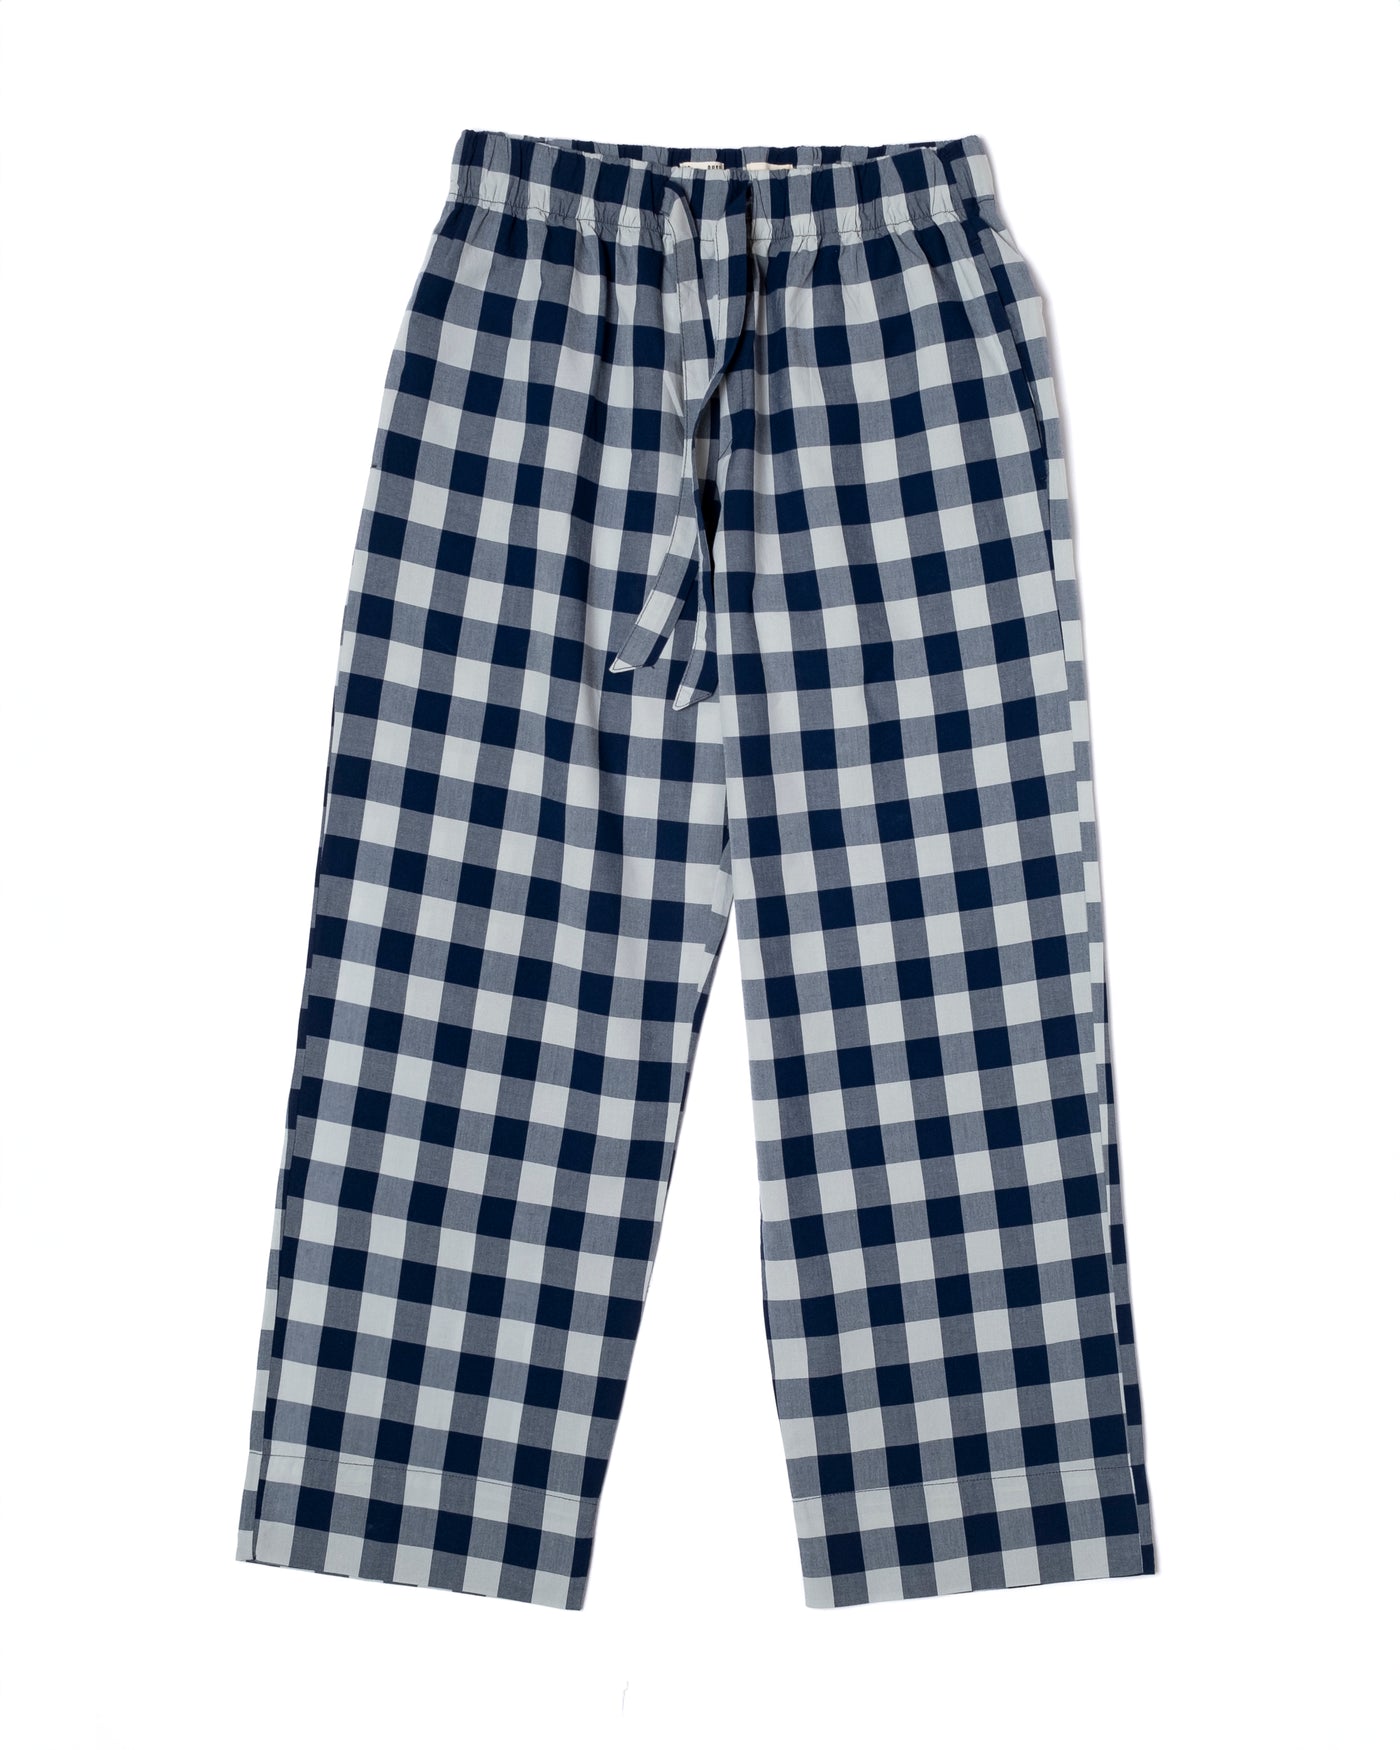 Pyjama Indigo Check Blue